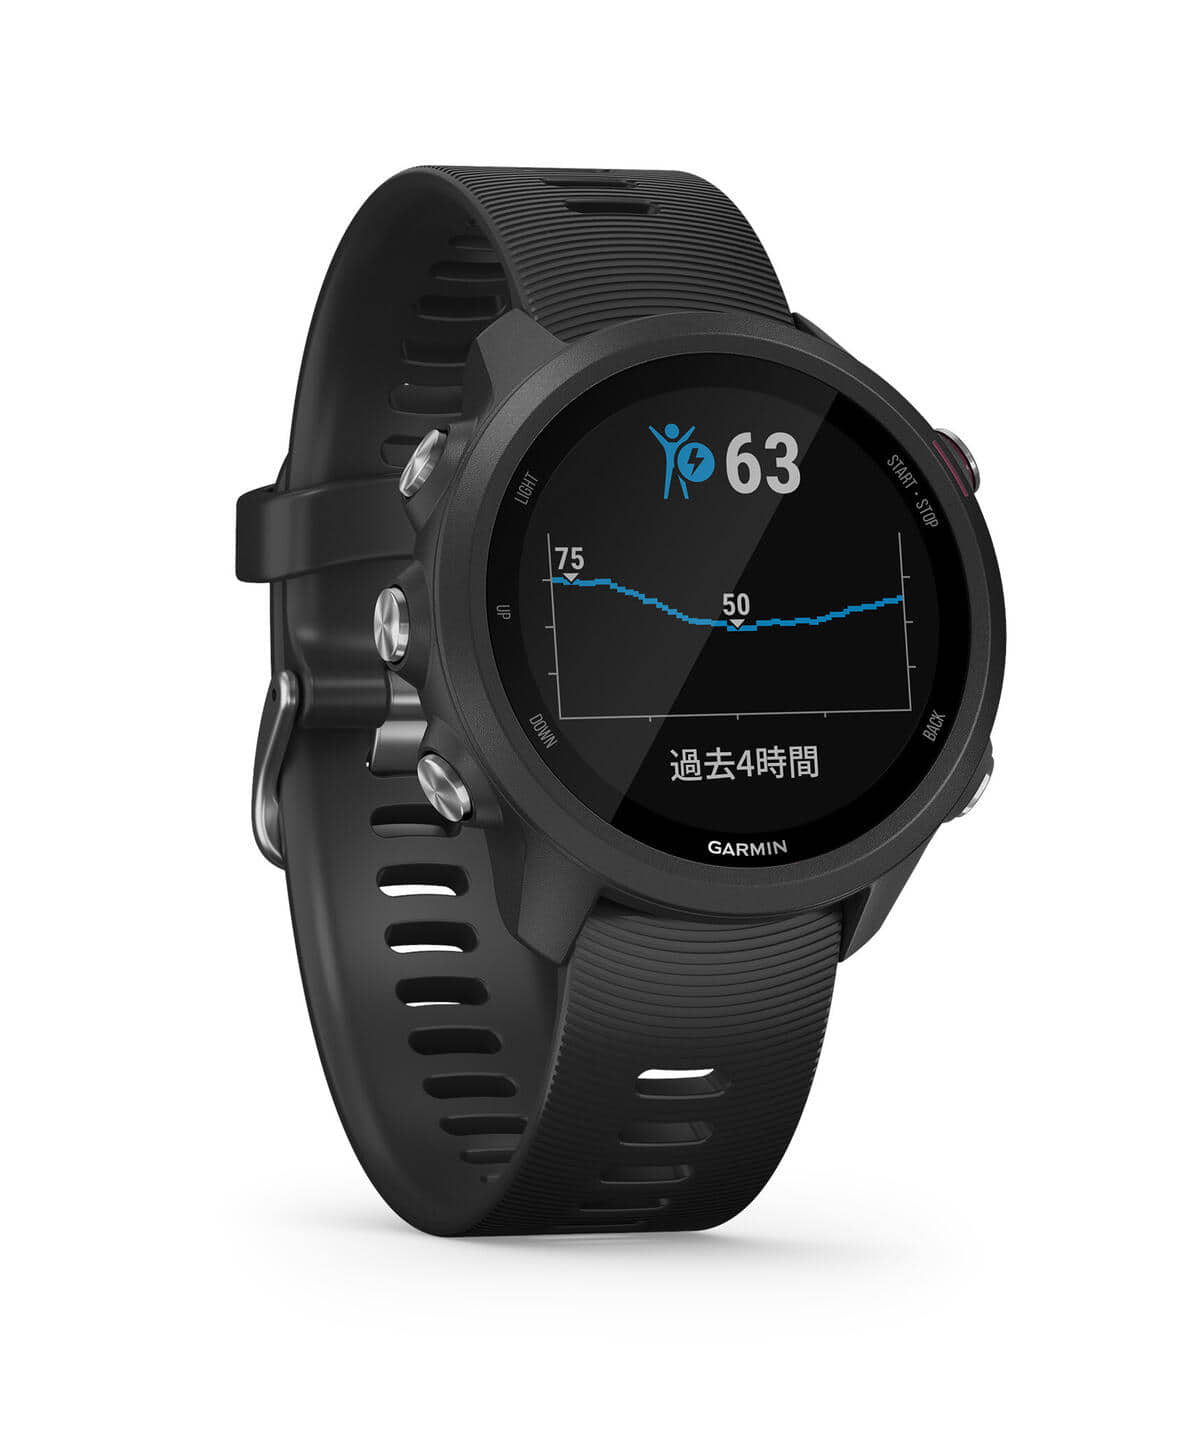 BEAMS BEAMS / ForeAthlete 245 GPS running watch (BEAMS Exclusive 